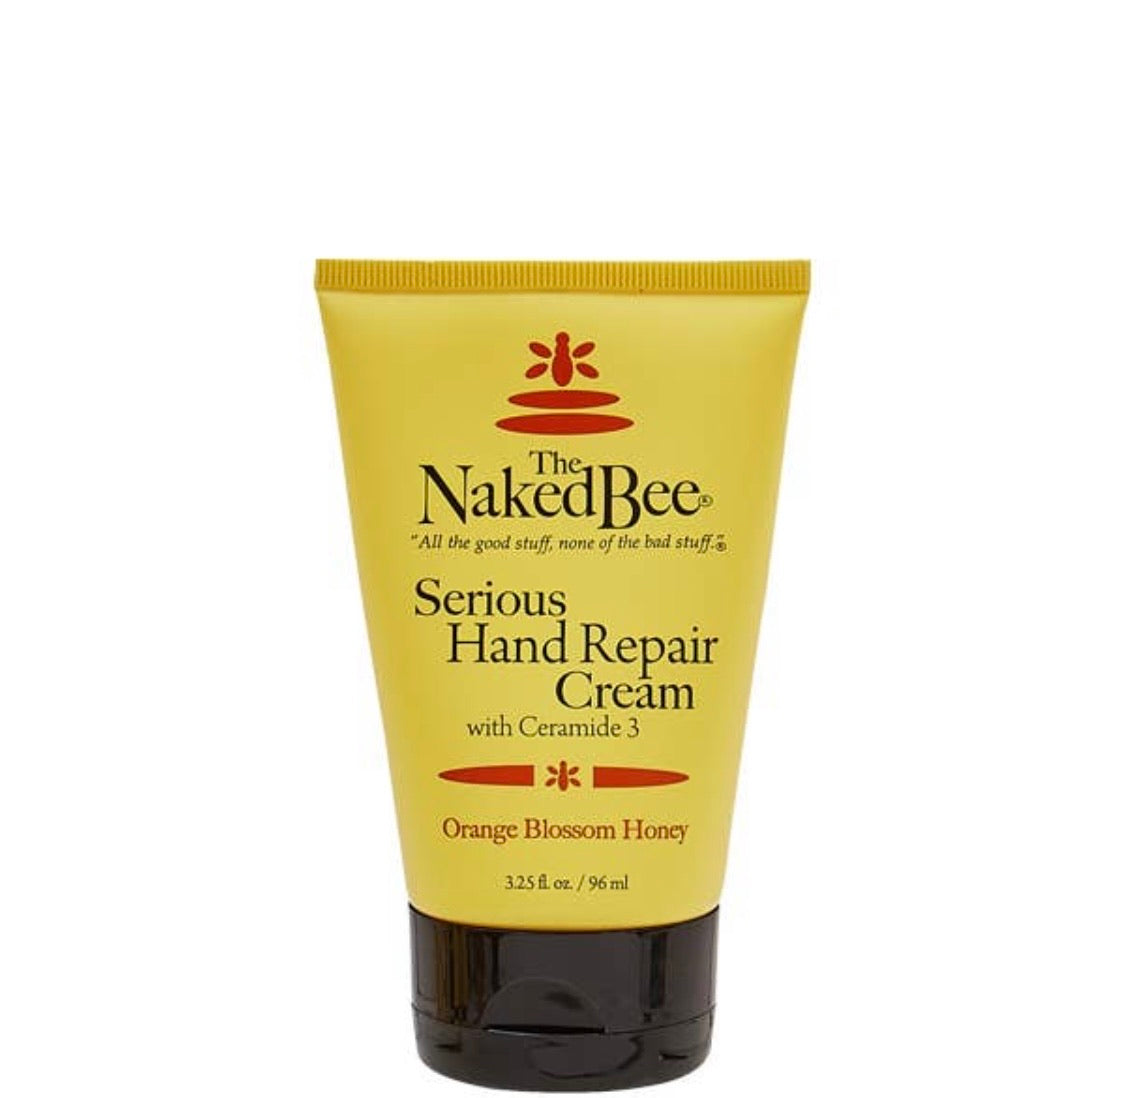 The Naked Bee Hand Repair Cream